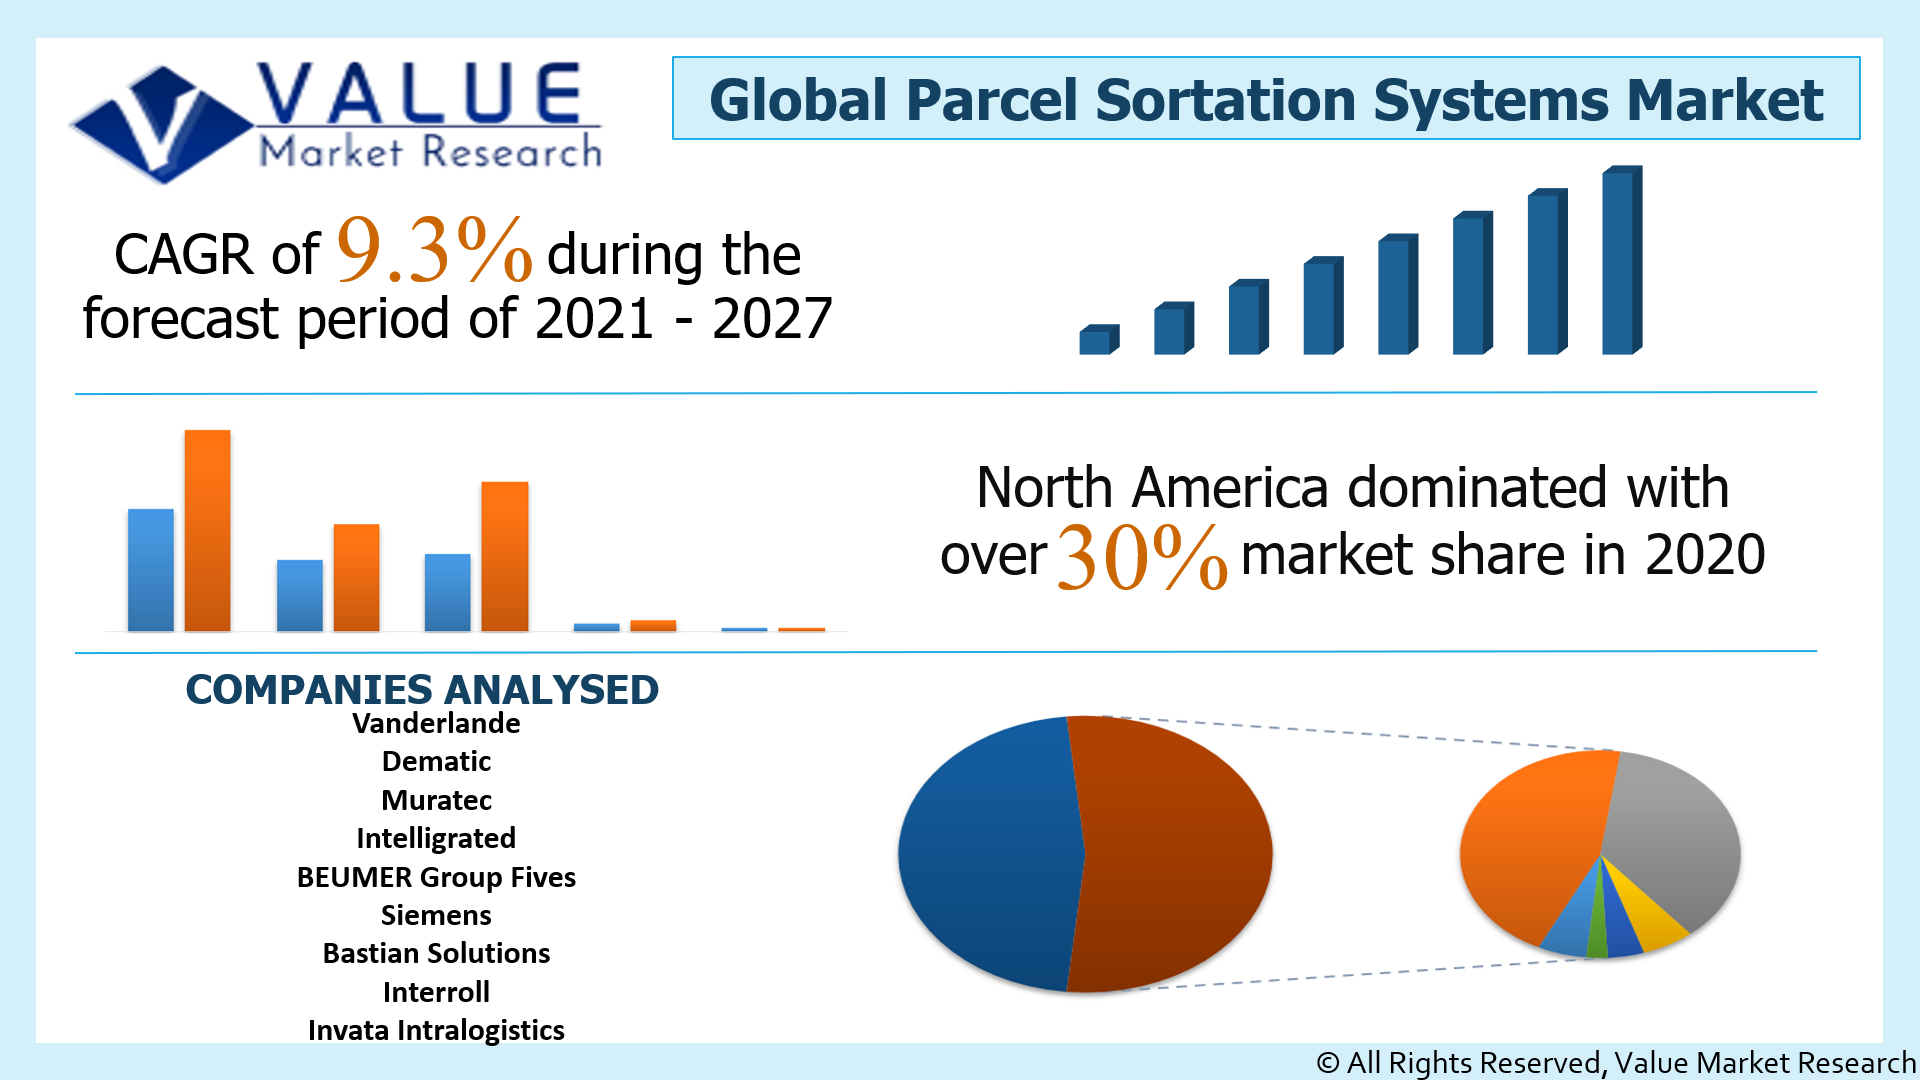 Global Parcel Sortation Systems Market Share